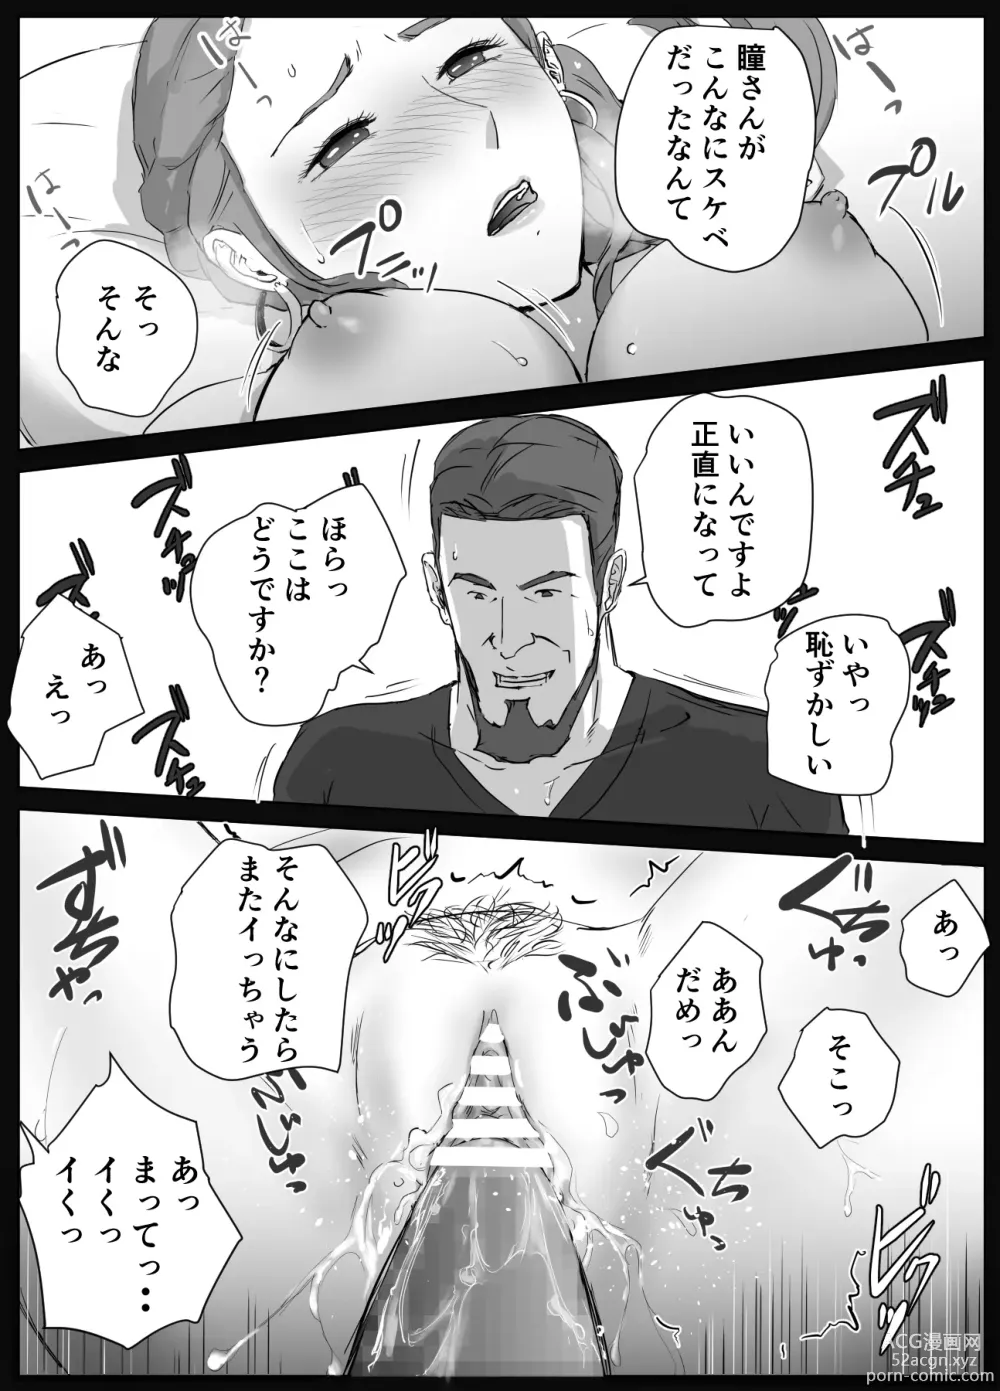 Page 29 of doujinshi Ano Hi no Uso 4 Rina Mama ~Hitomi~ 1-nen Mae no Dekigoto